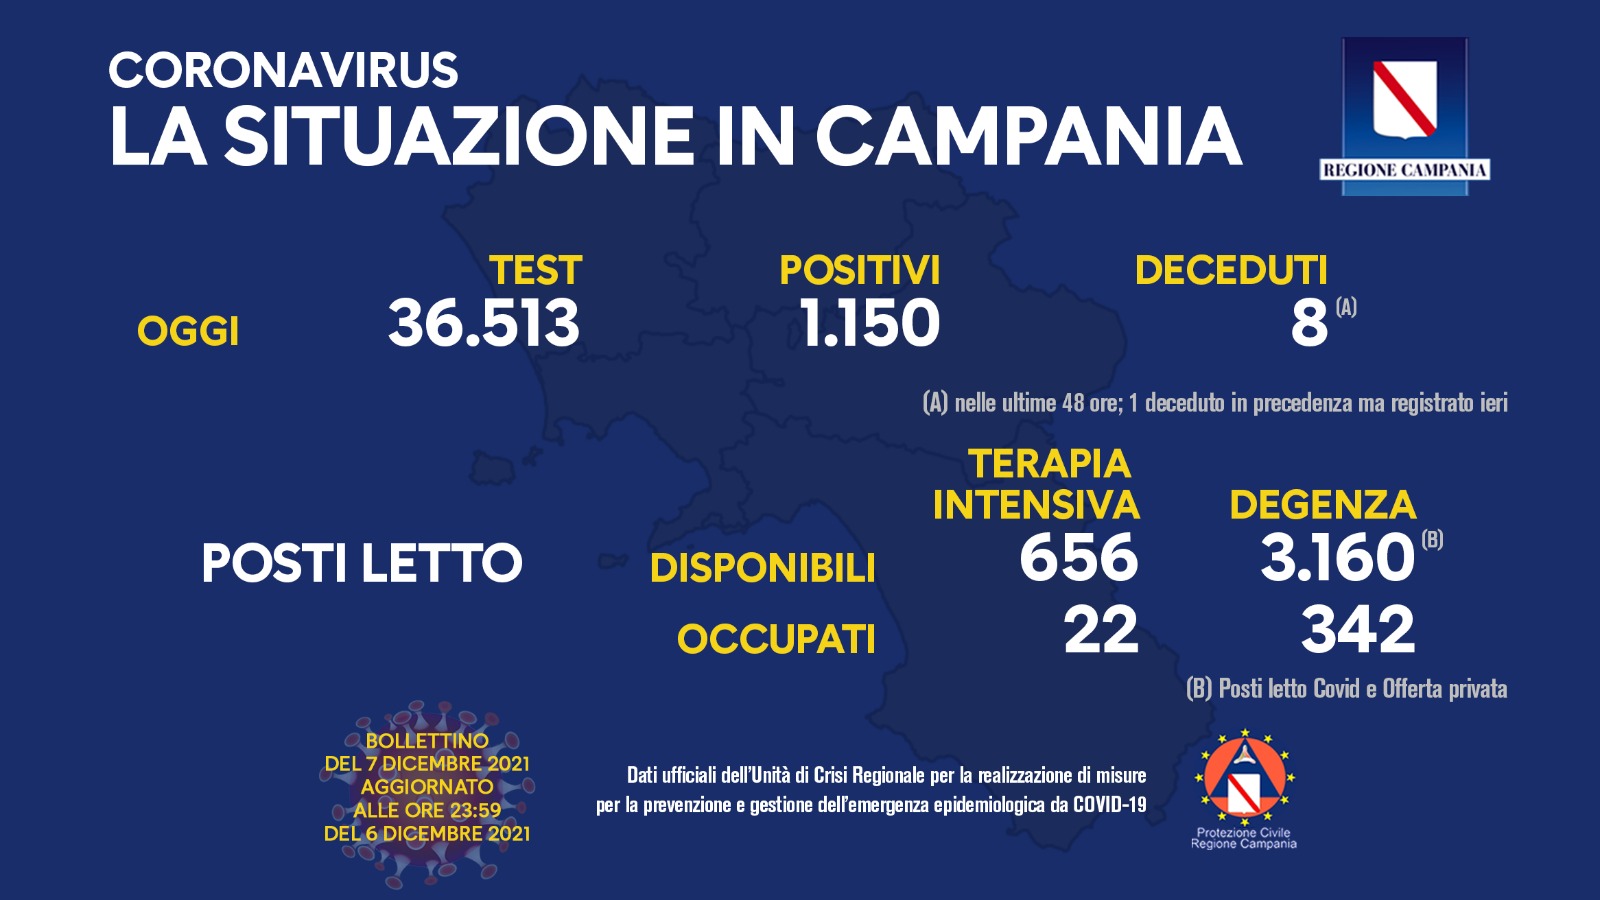 Regione Campania: Coronavirus, Unità di Crisi, Bollettino, 1150 casi positivi, 8 decessi